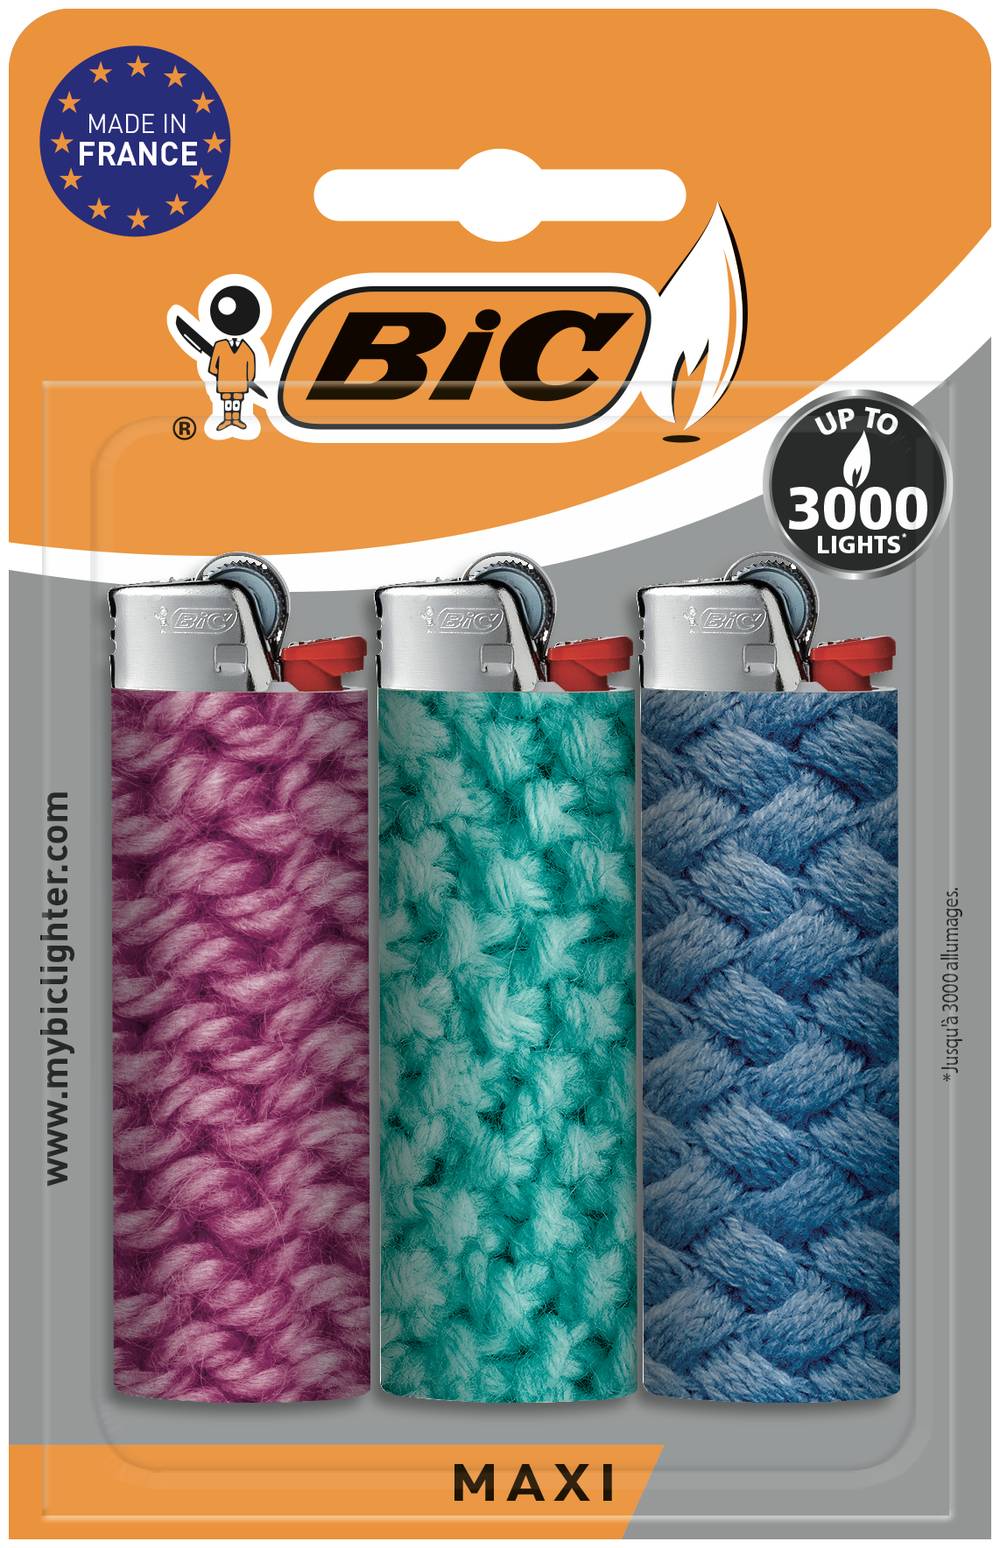 Bic - Maxi briquets à pierre edition limitée (couleurs assorties)